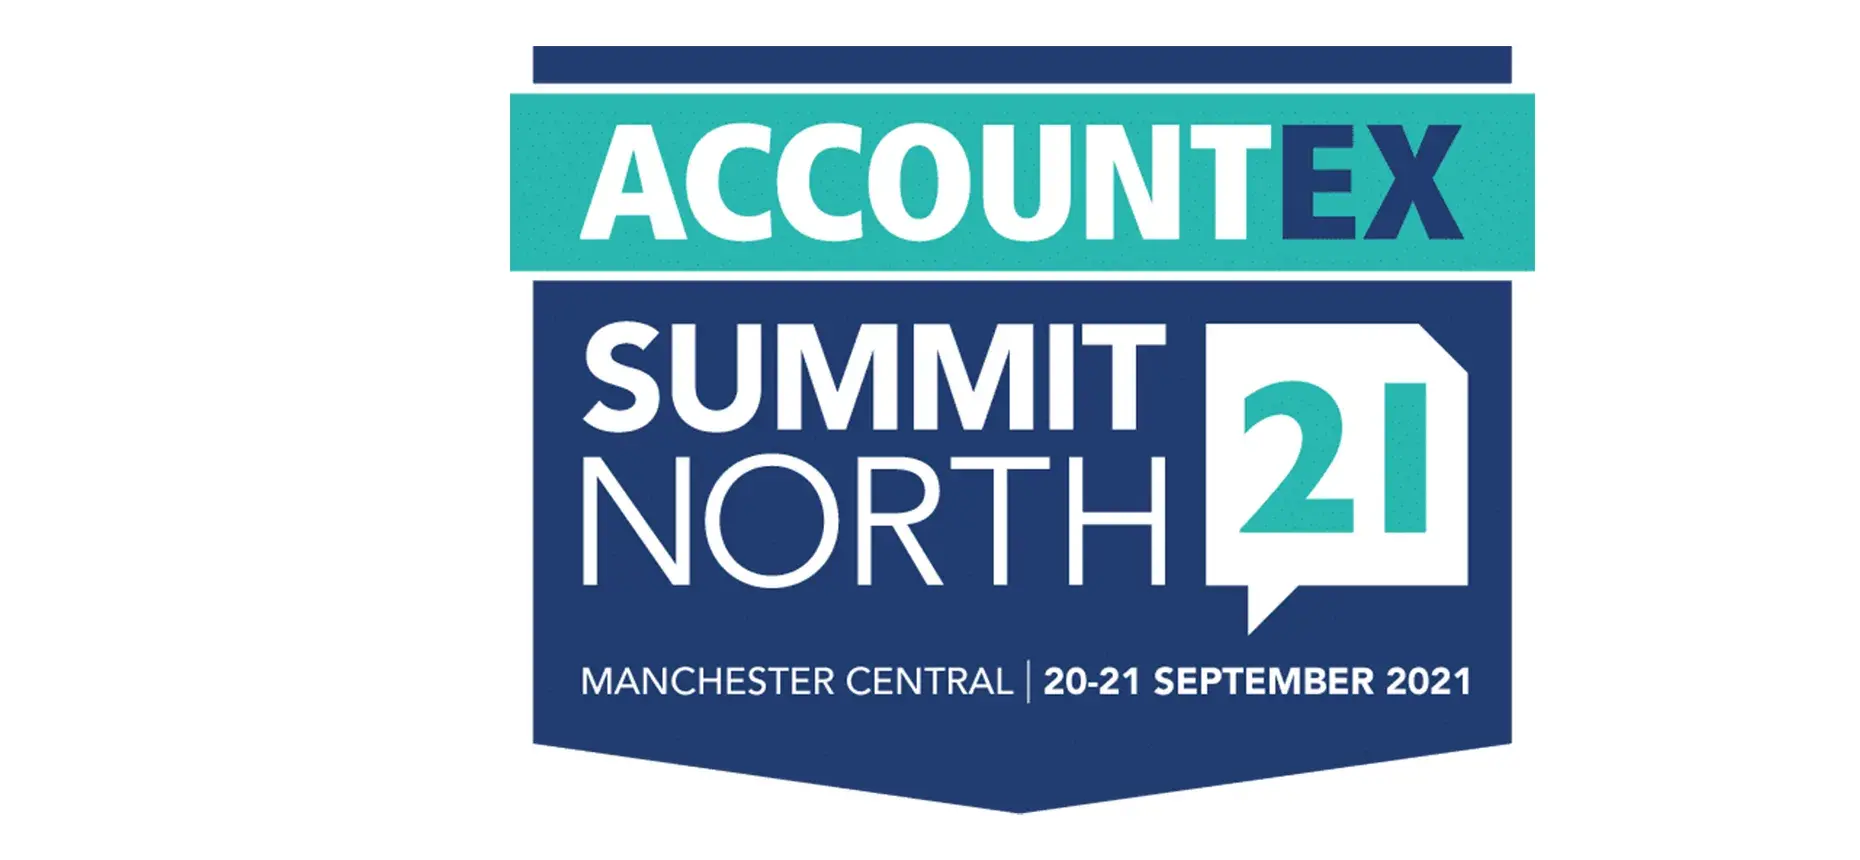 Accountex summit north 2021